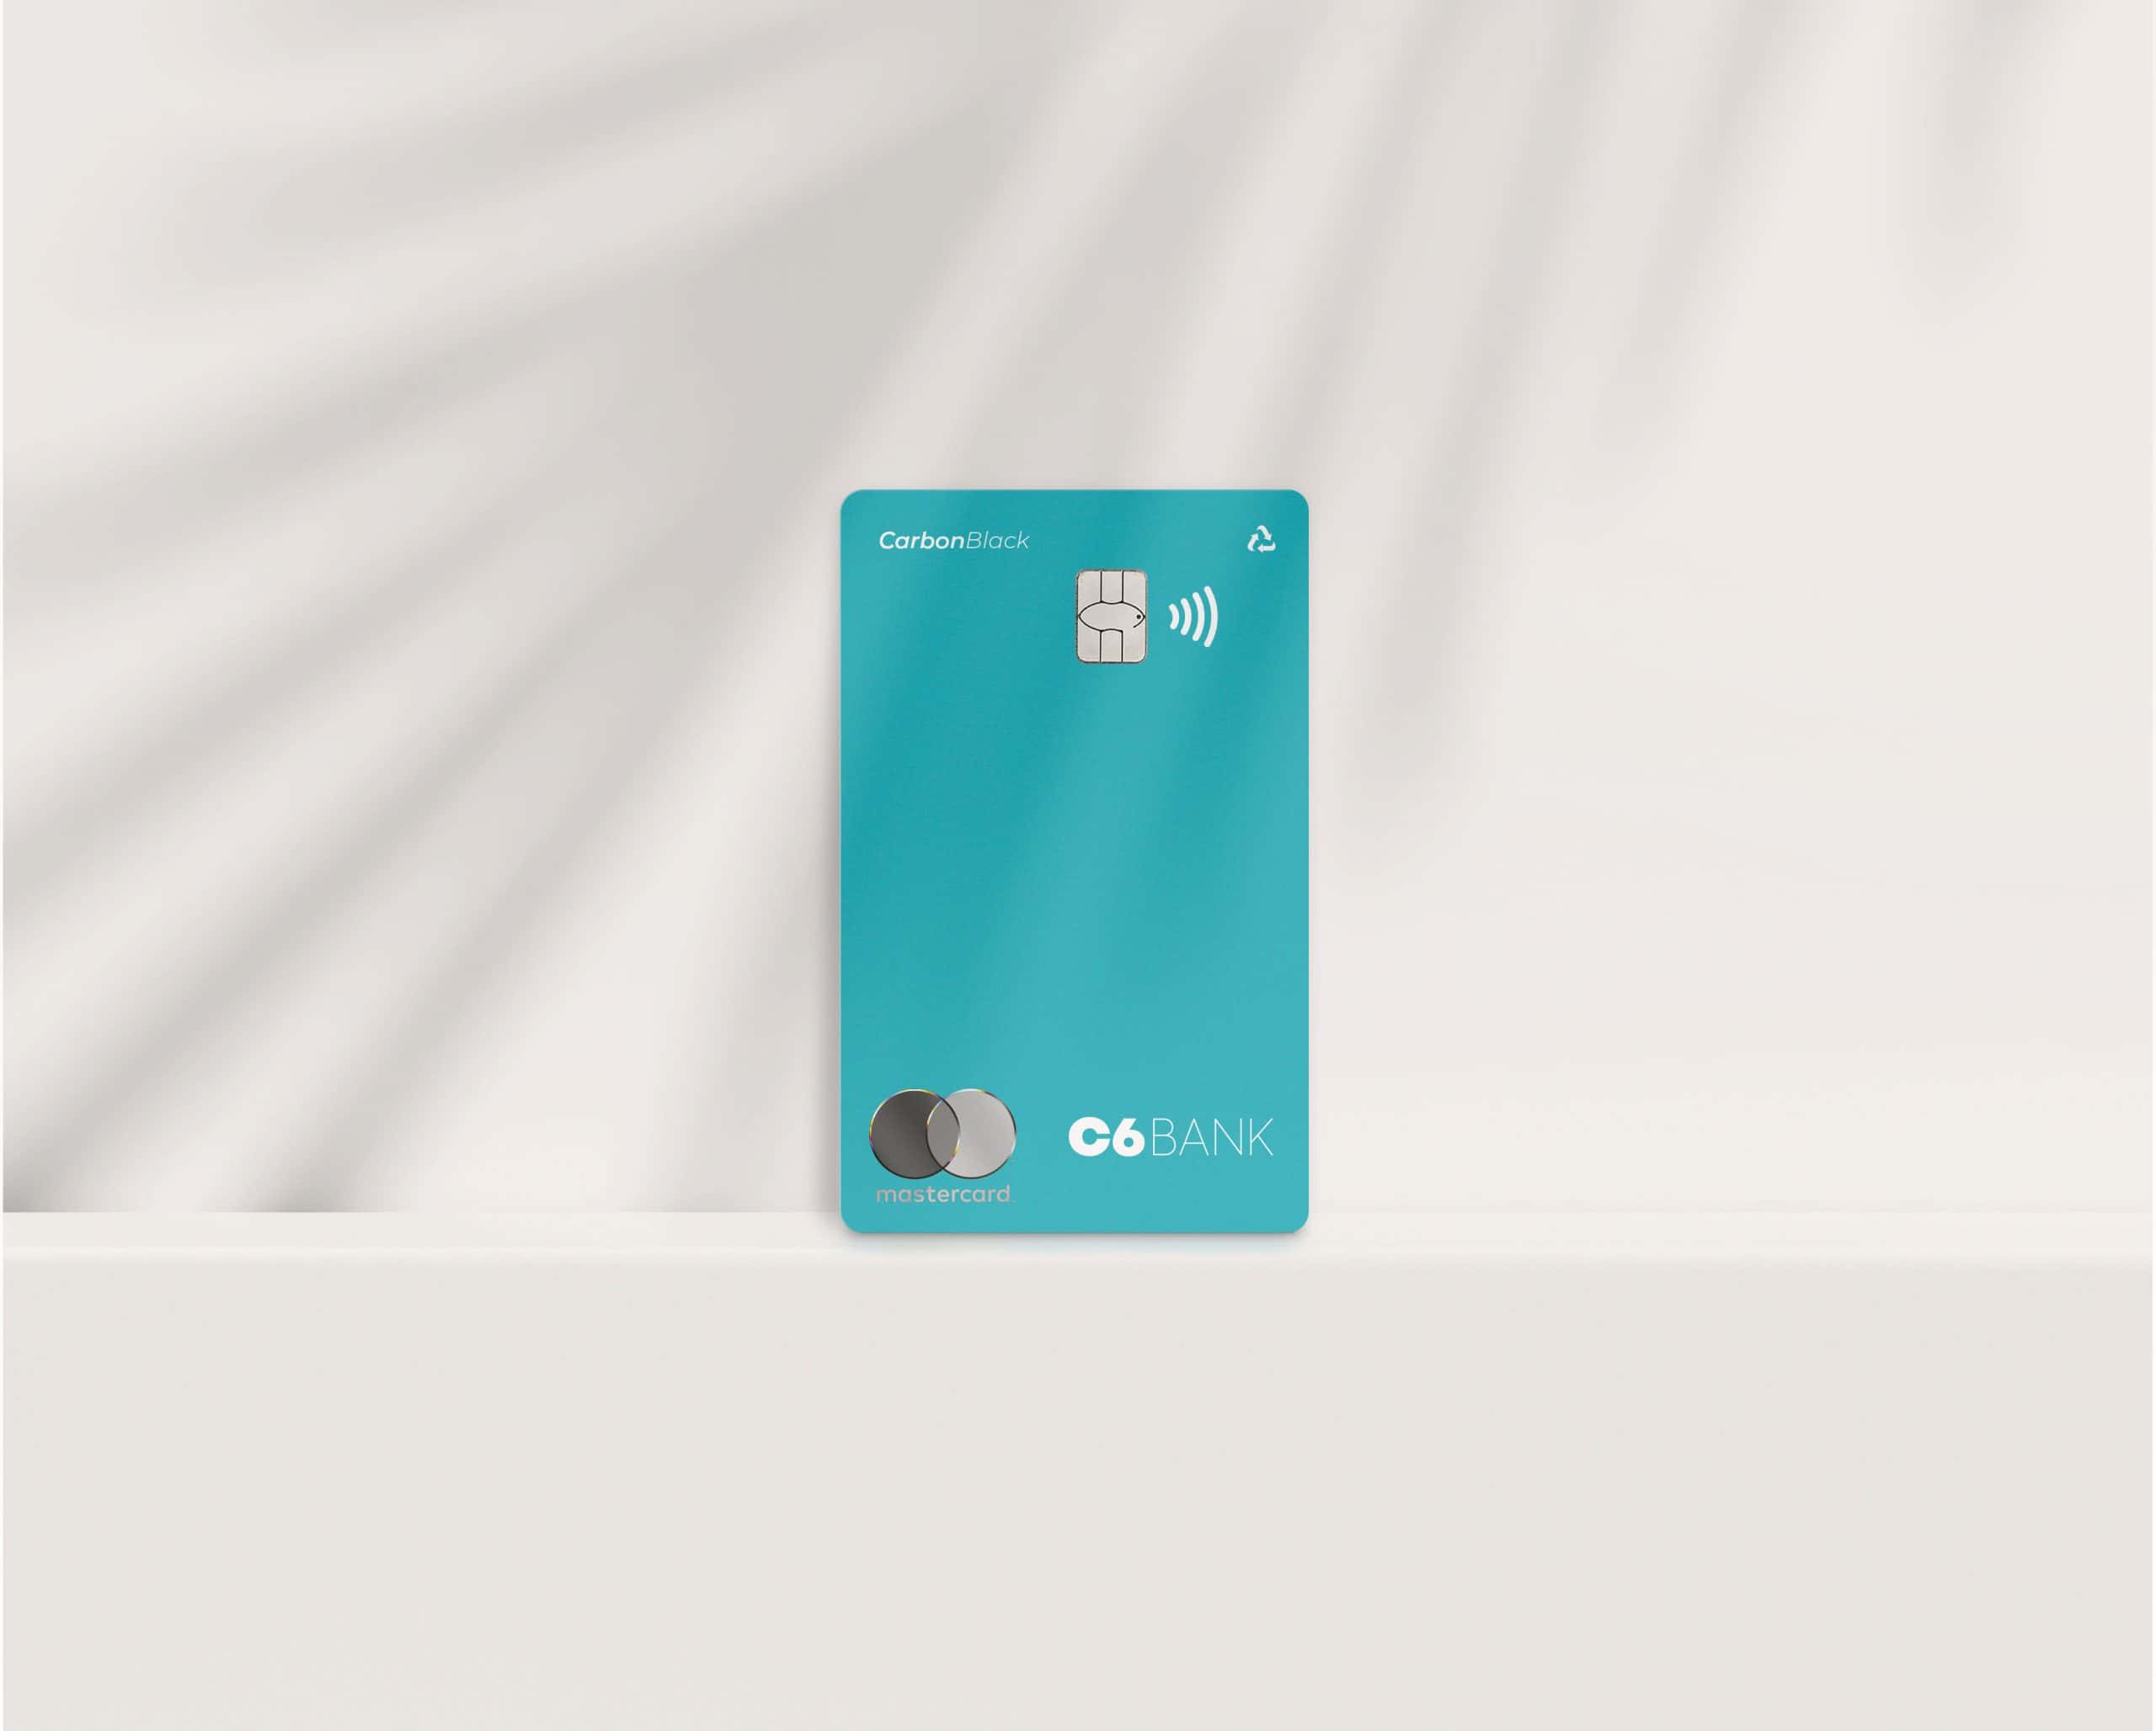 Foto do cartão Acqua, um cartão azul piscina, com o logo da Mastercard, logo do C6 Bank, a inscrição "Carbon Black", o chip, o sinal de NFC e o sinal de "retornável", posicionado em pé, em um fundo branco com efeito de movimento.